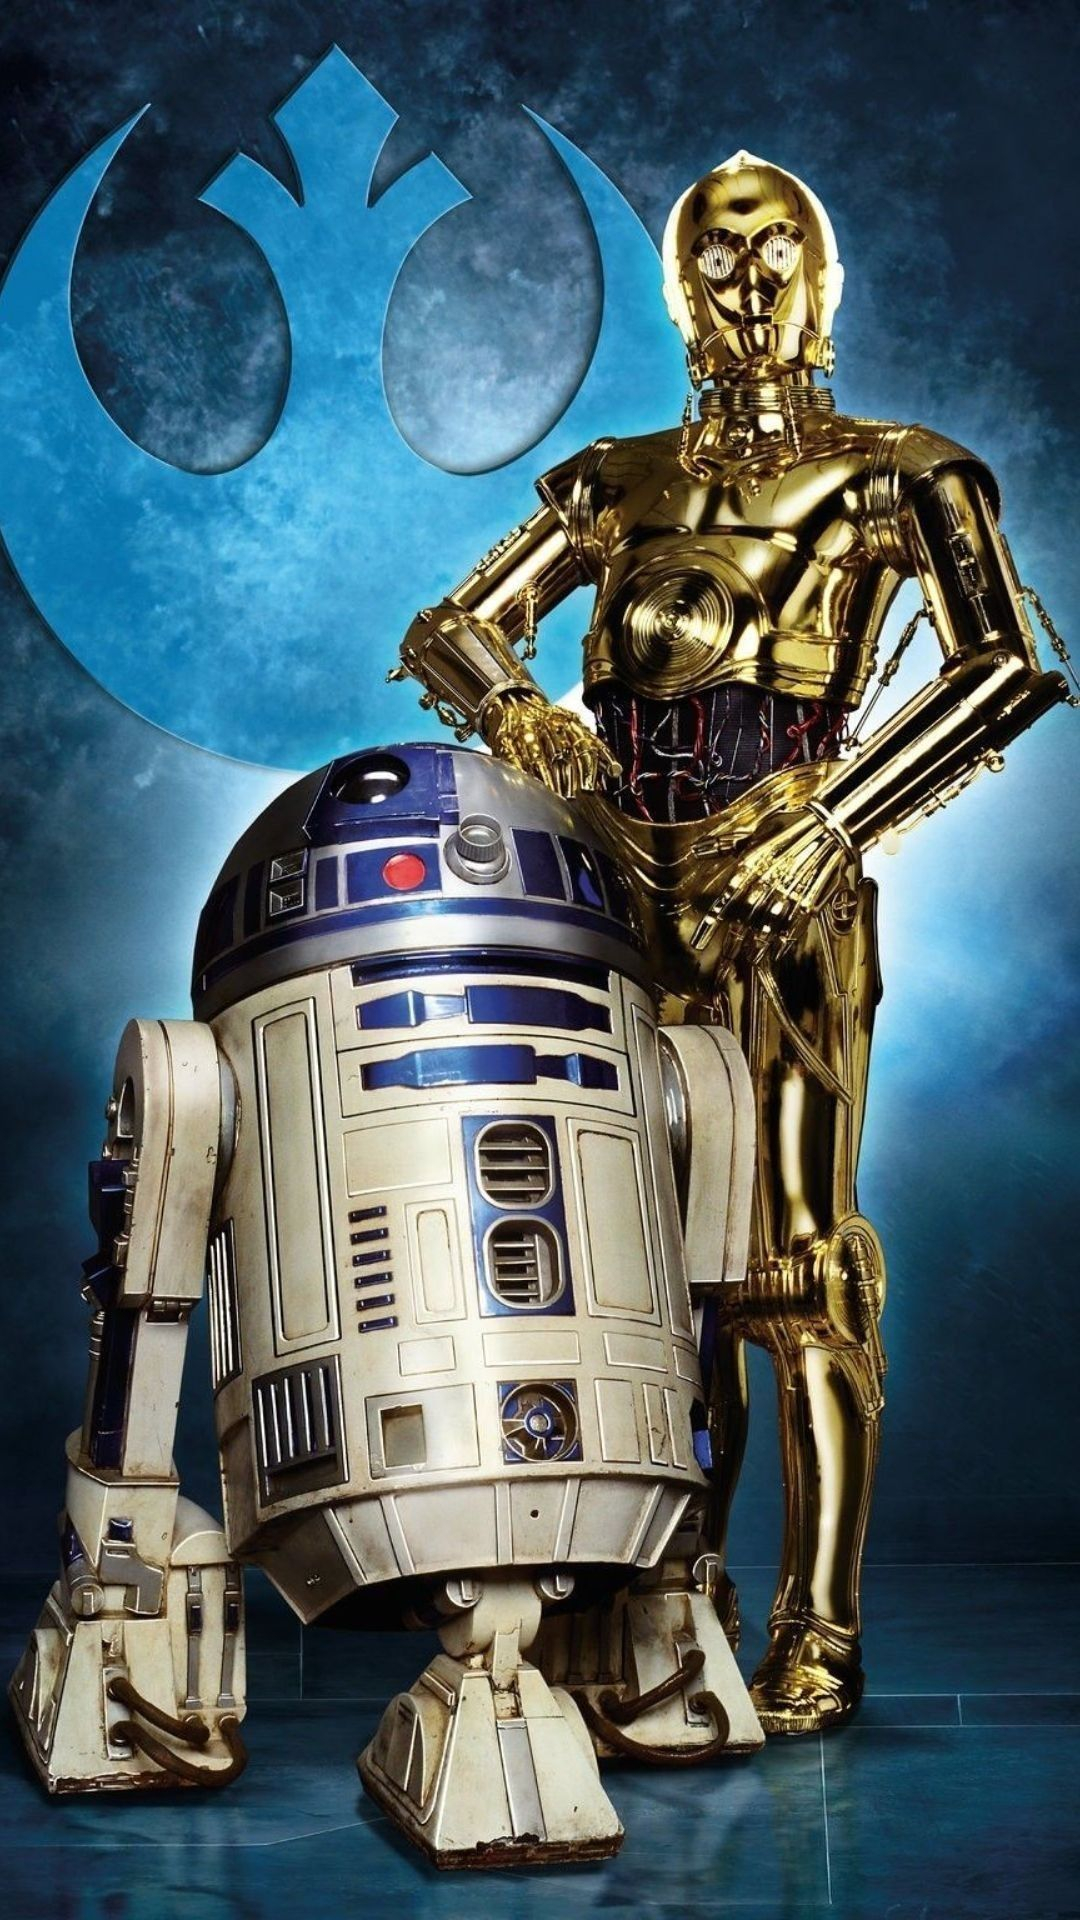 1080x1920 Star Wars: R2-D2 and C-3PO Star Wars Paint Ideas of Star Wars Paint # starwars #painting #decoration &acirc;&#128;&brvbar; | Star wars canvas art, Star wars pictures, Star wars film